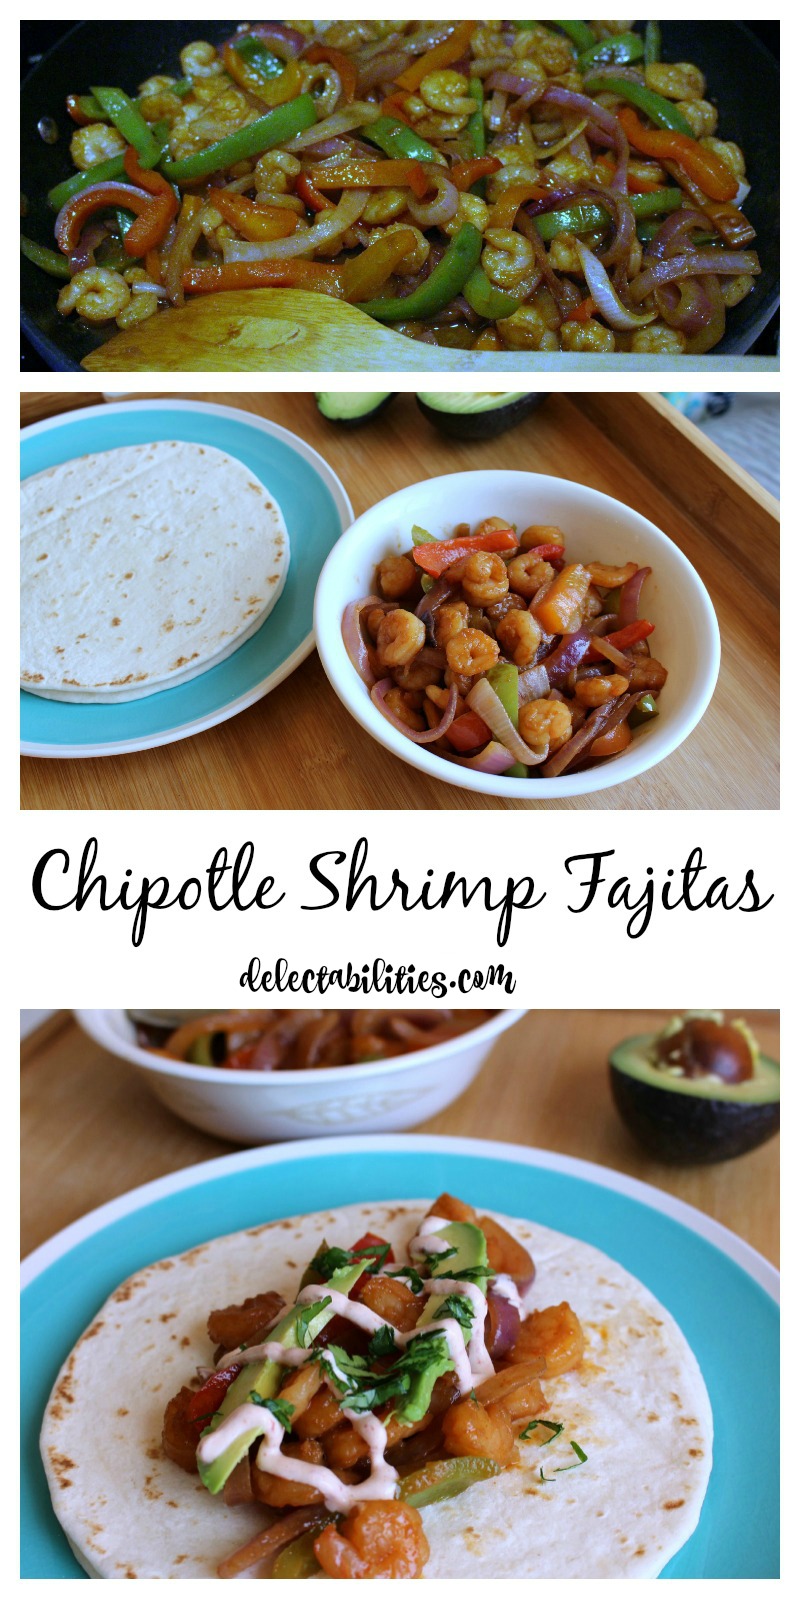 Chipotle Shrimp Fajitas